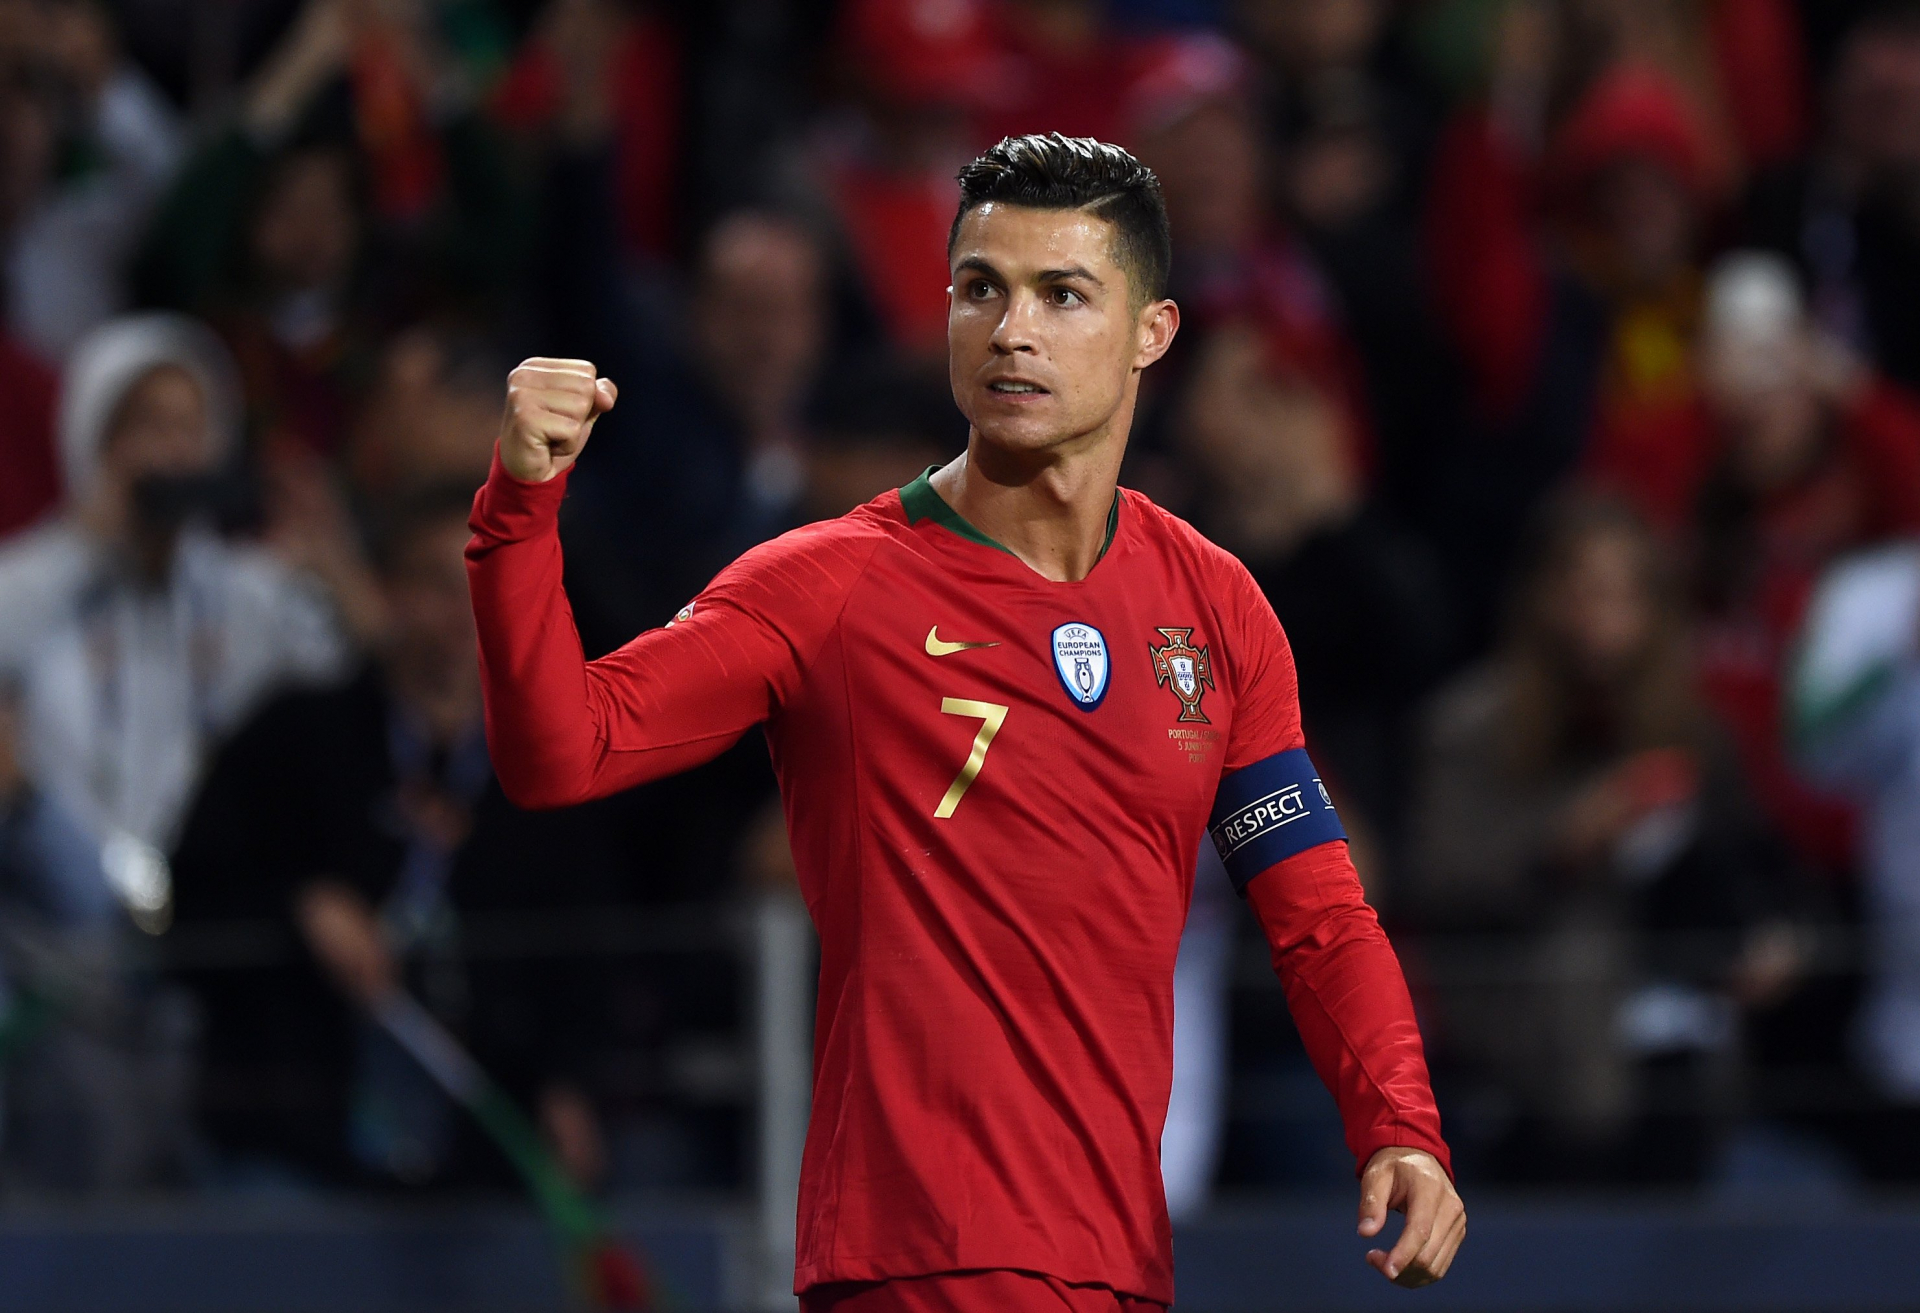 Lịch trực tiếp của tuyển Bồ Đào Nha tại EURO 2020 theo giờ Việt Nam mới nhất